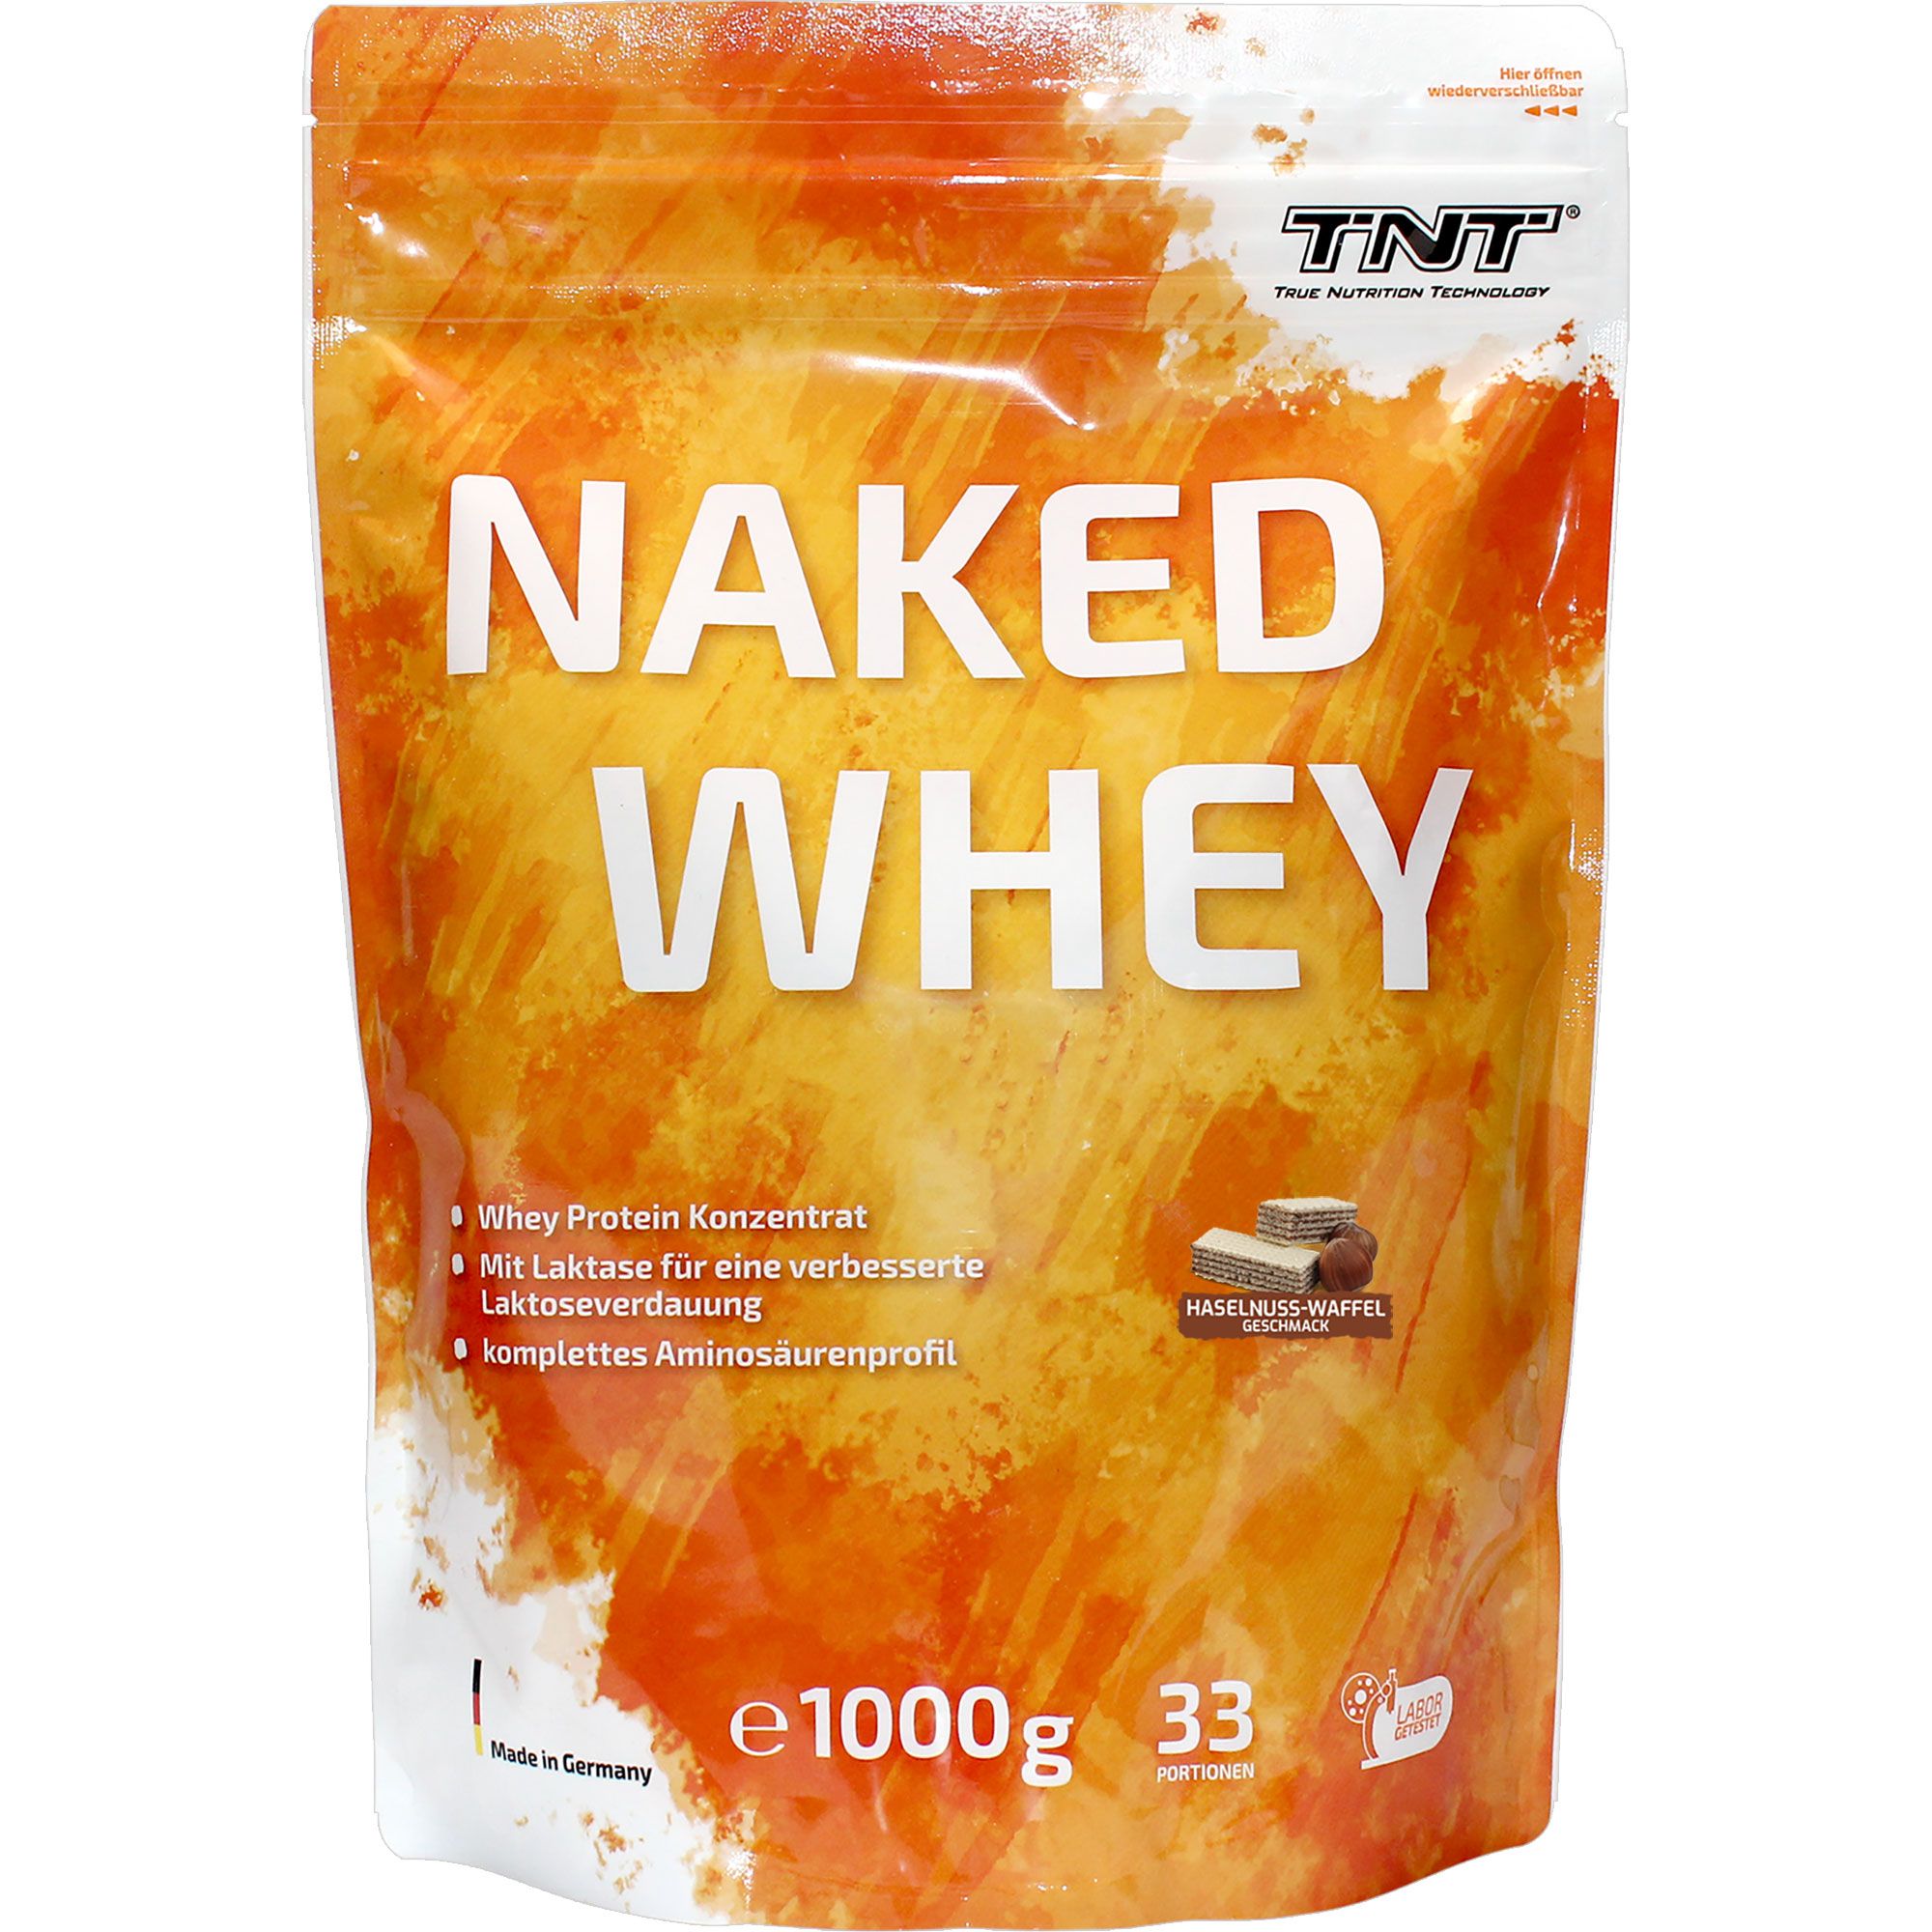 TNT Naked Whey Protein - Haselnuss-Waffel, hoher Eiweißanteil, mit Laktase für bessere Verdauung